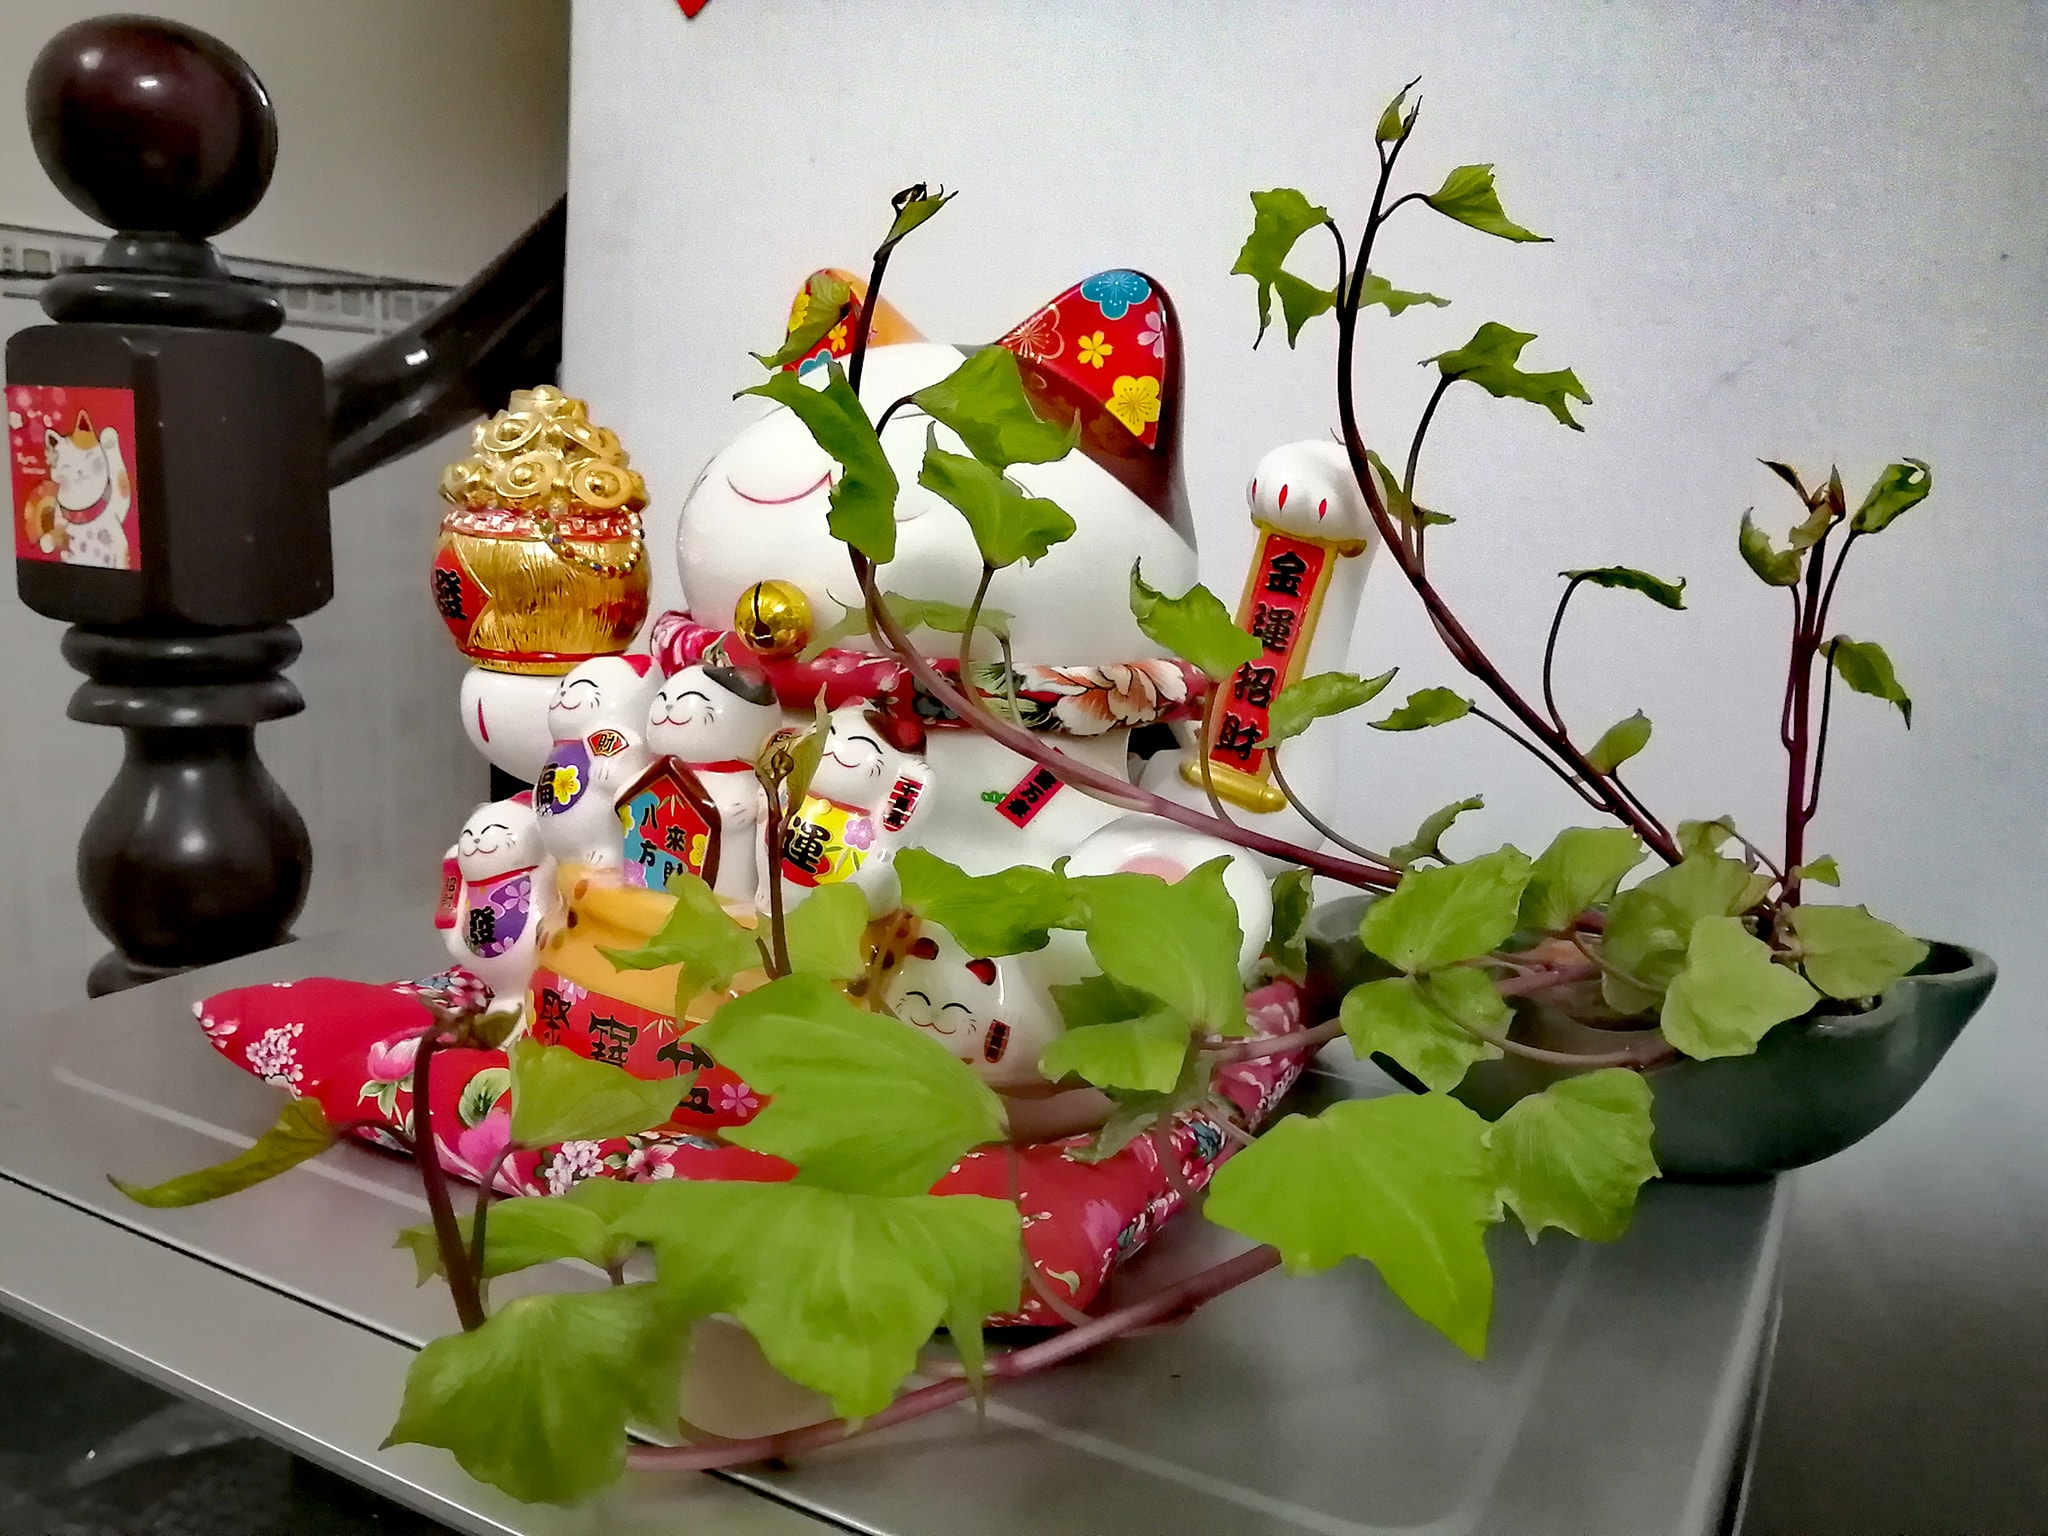 Trồng khoai lang bonsai làm đẹp nhà với các bước dễ vô cùng mà nói ra ai cũng sẽ làm được - Ảnh 5.